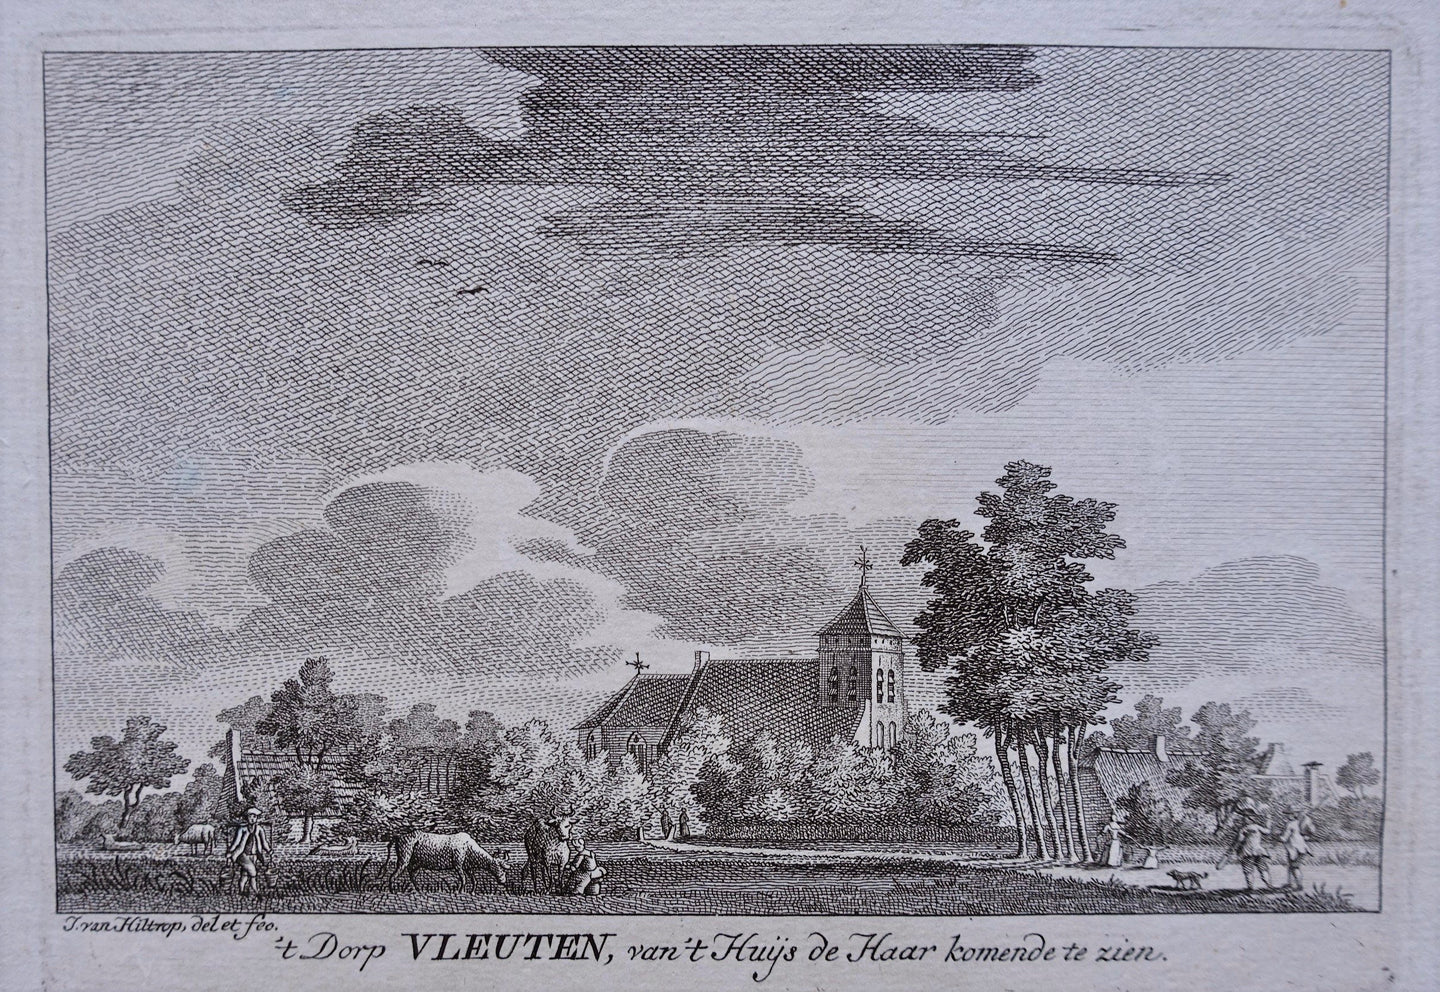 Vleuten - J van Hiltrop - ca 1760